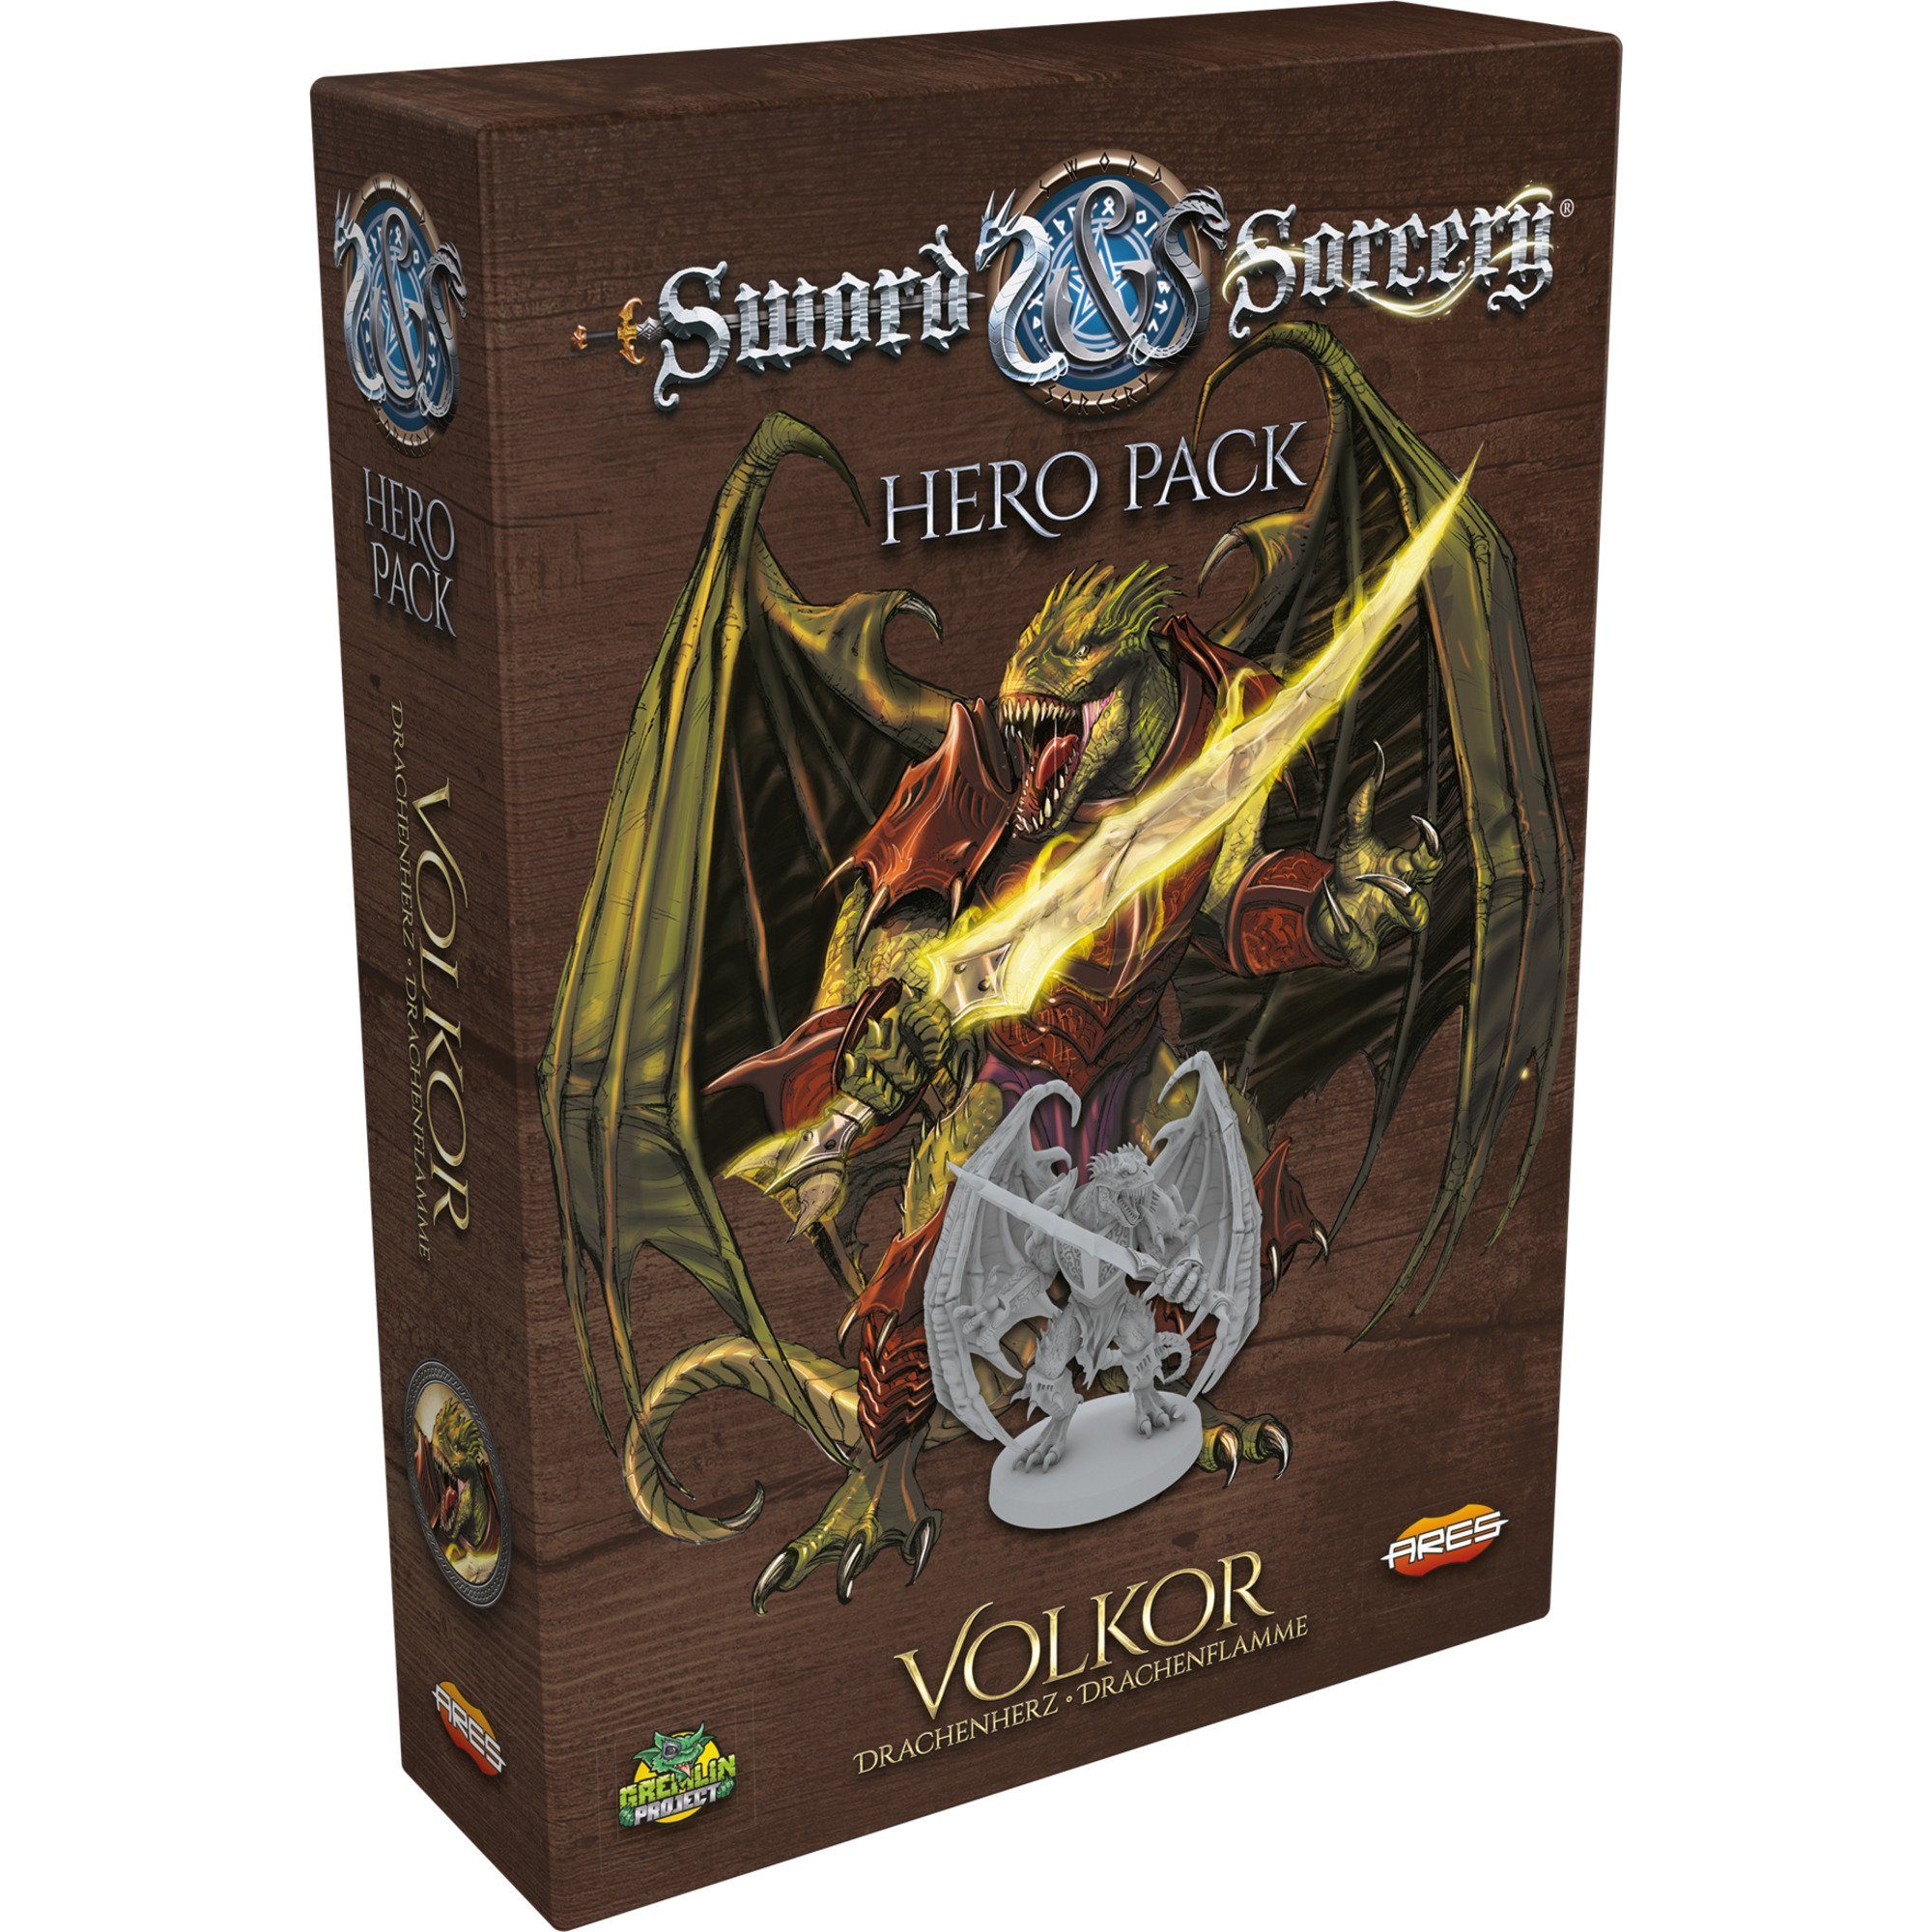 Asmodee Spiel, Sword & Sorcery - Volkor